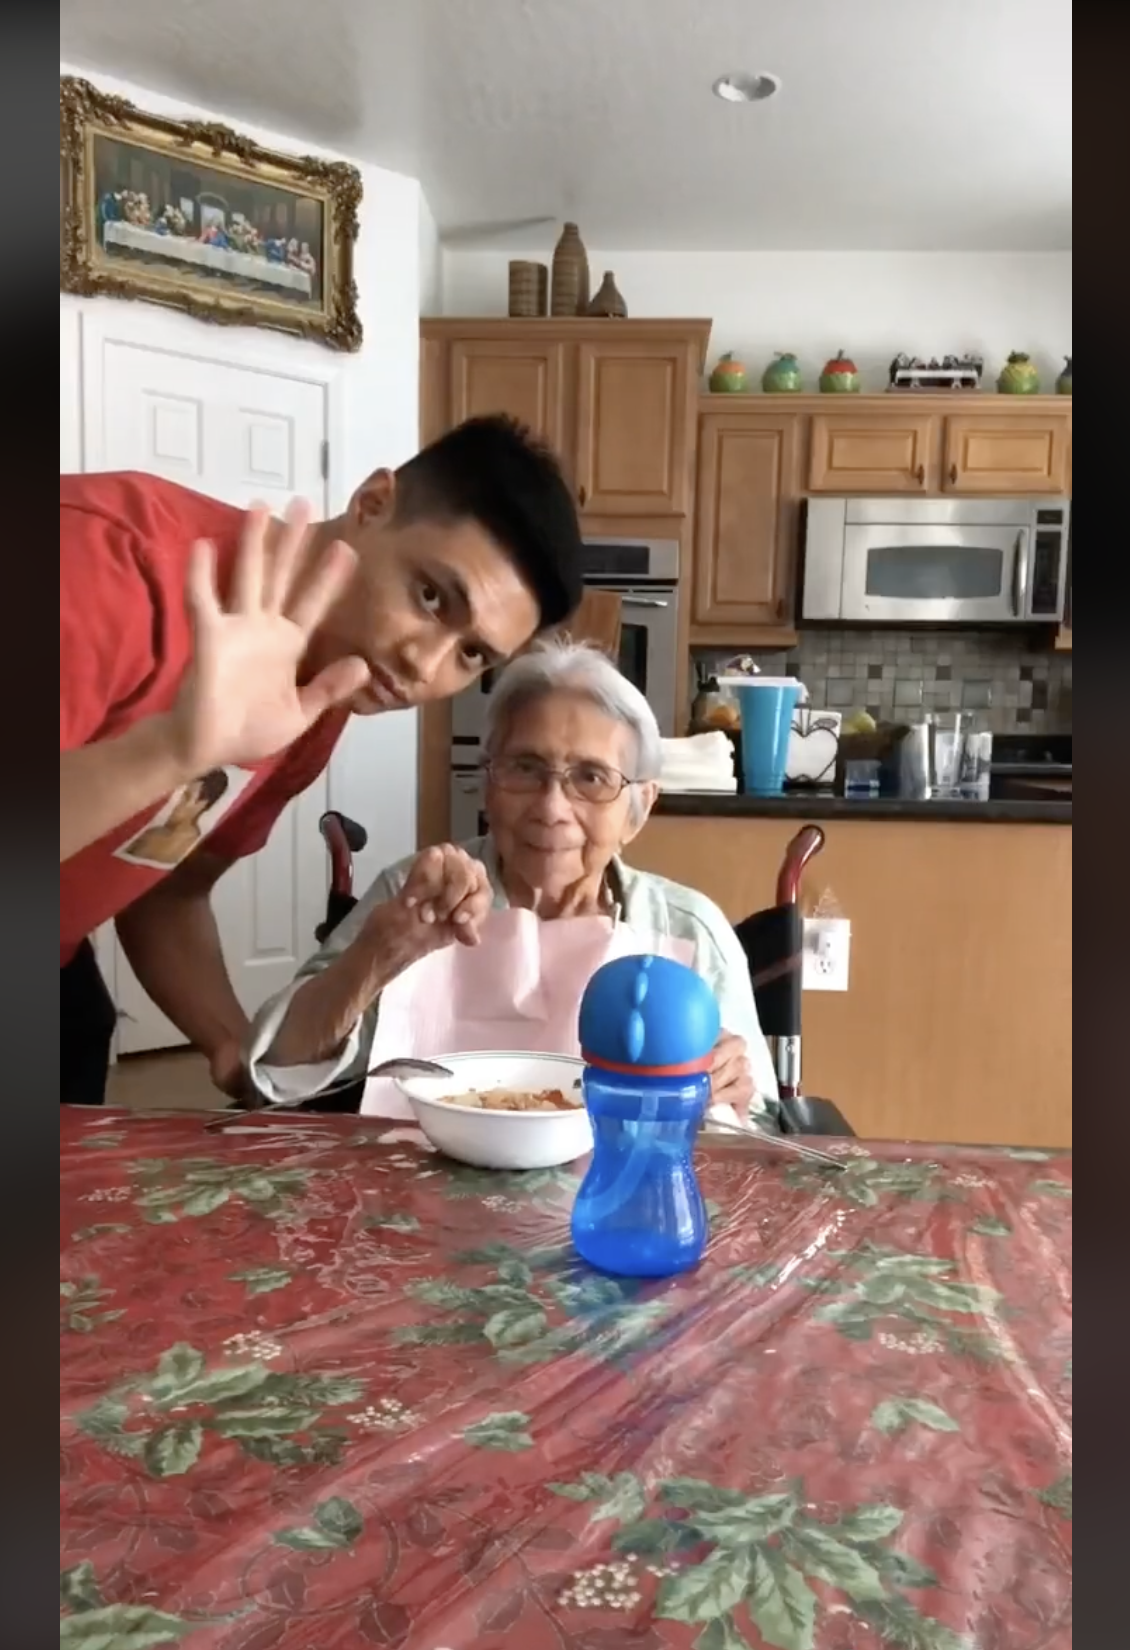 Chris Punsalan mit seiner Großmutter am Esstisch | Quelle: tiktok.com/@firstnamechris